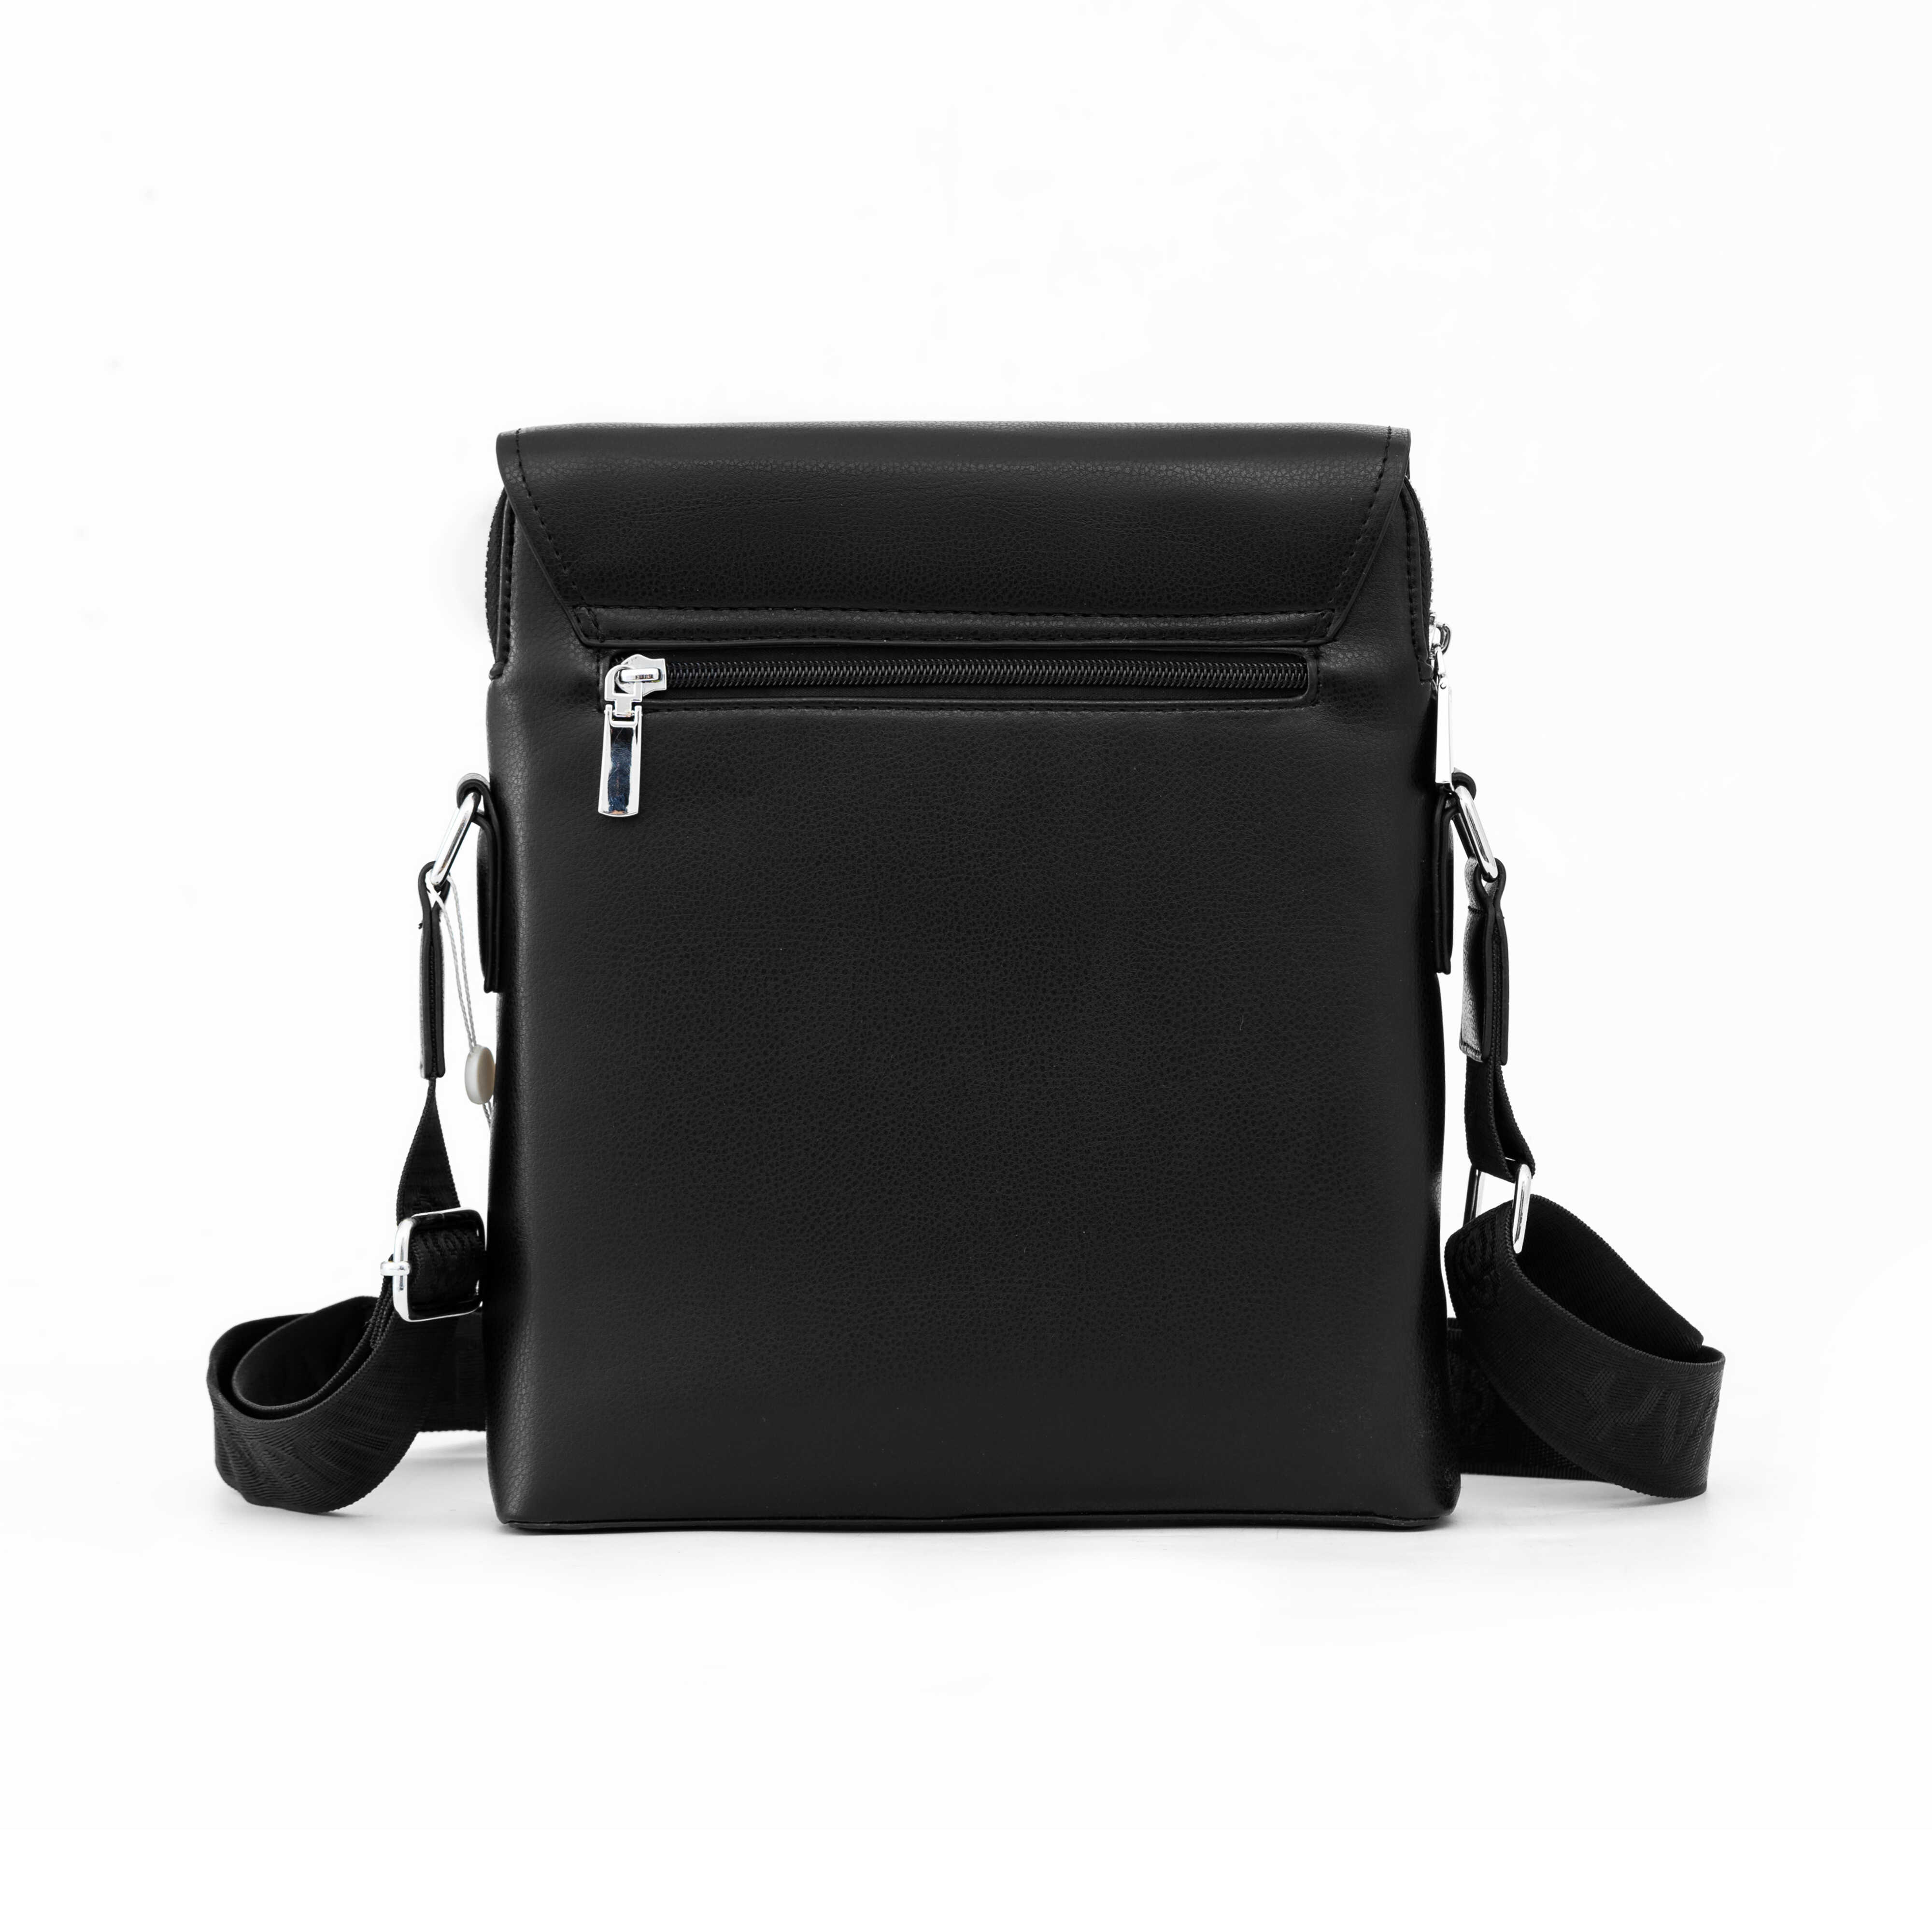 Túi đeo chéo nam da cao cấp form đứng chống trầy chính hãng YVan thời trang thanh lịch 1011-1